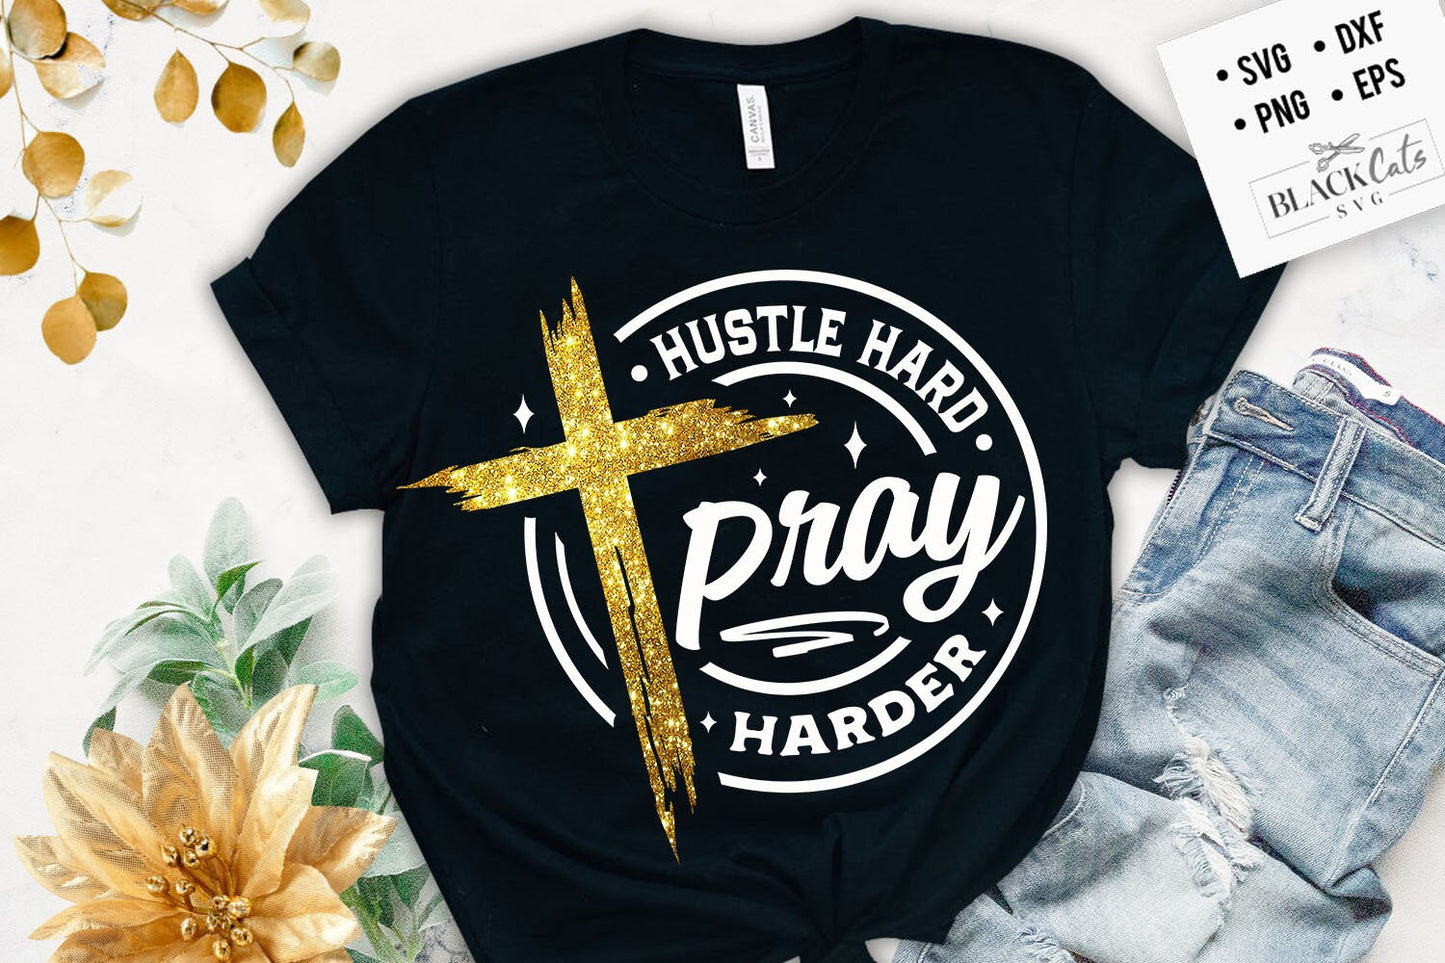 Hustle hard pray harder svg, prayer svg, Faith svg,  Pray svg, Christian cross svg, Bible verse svg